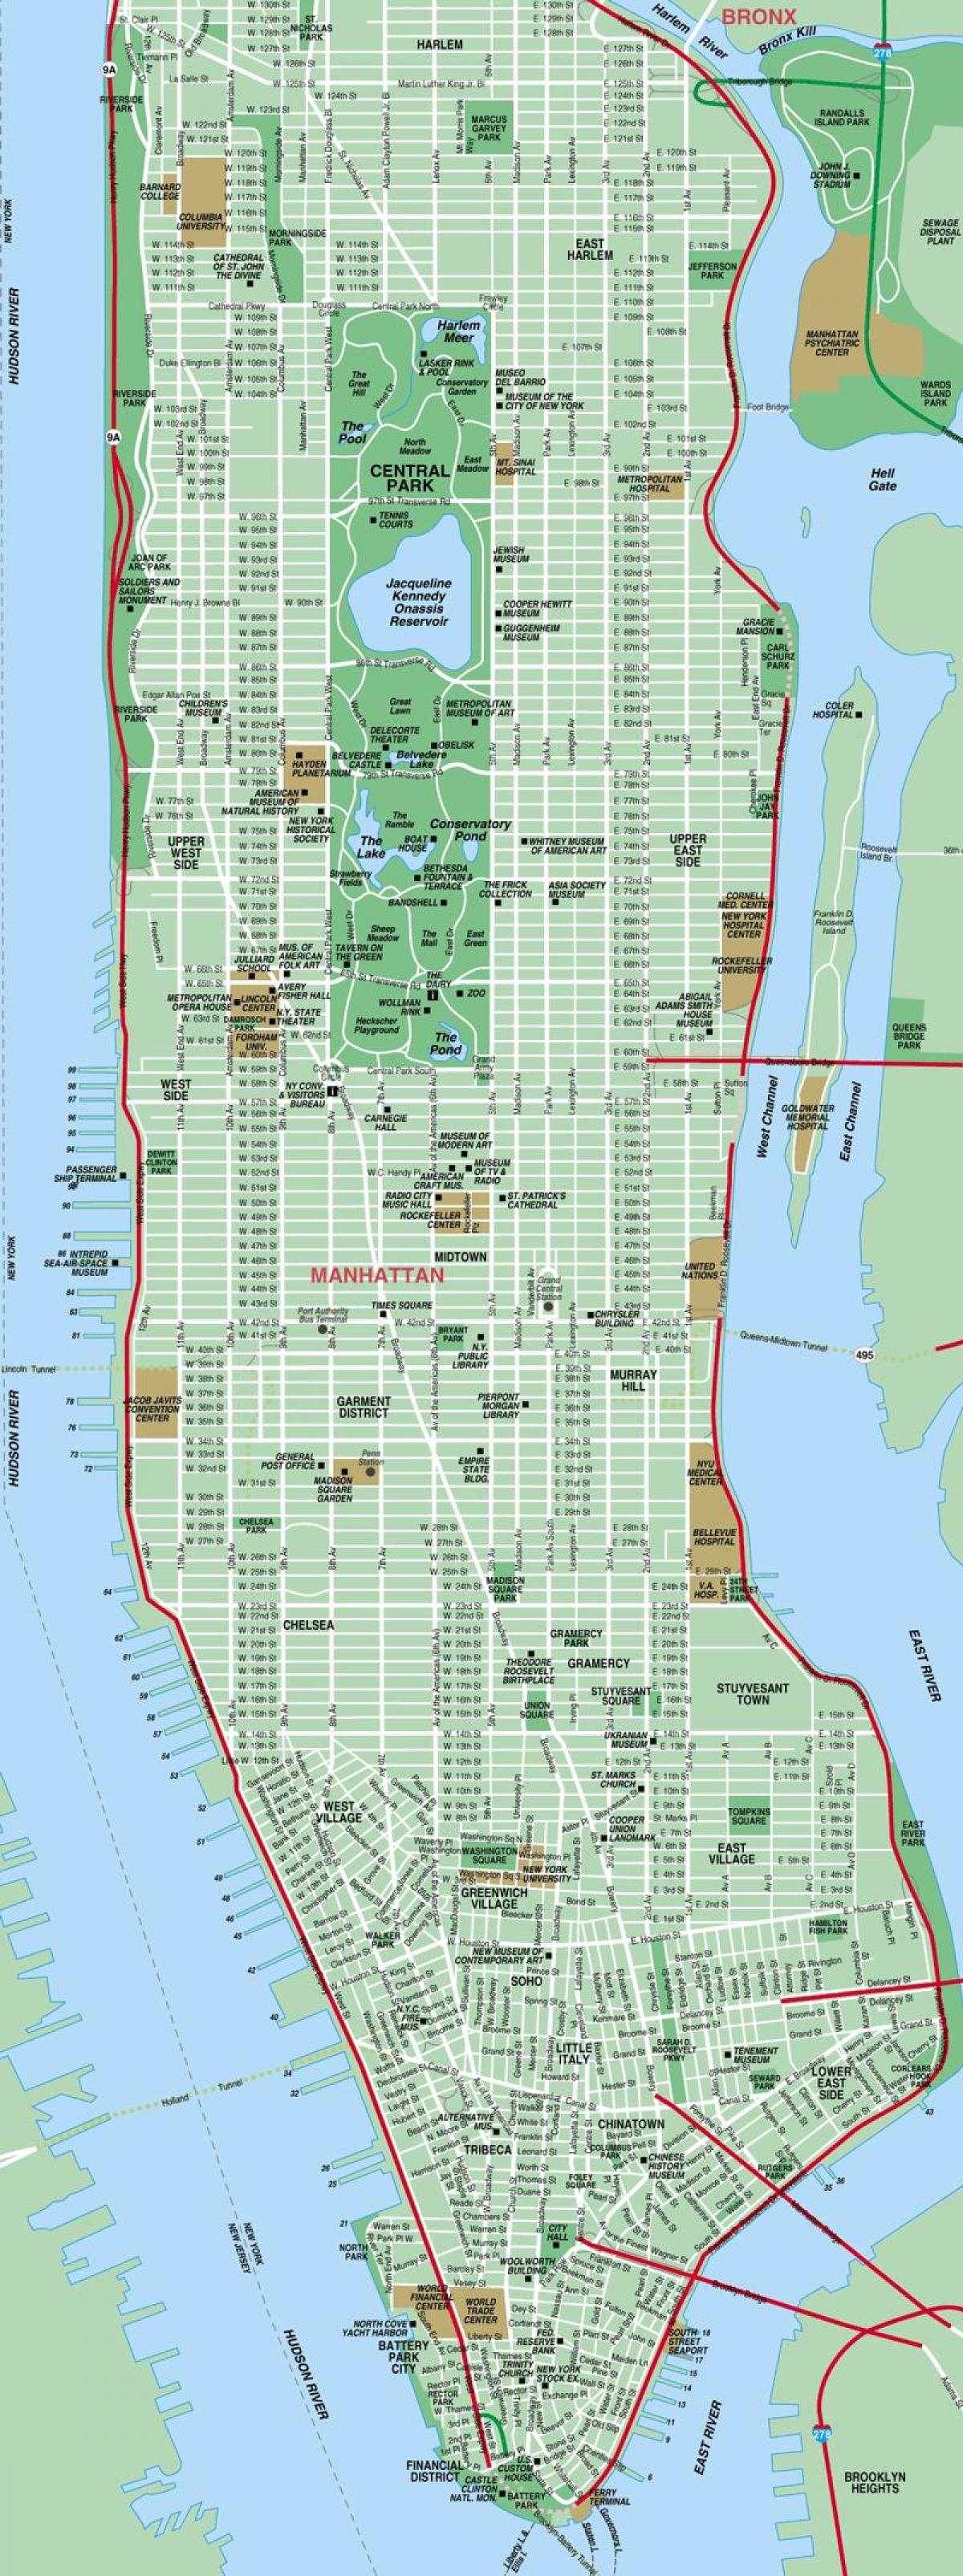 سڑک کے نقشے کے مین ہیٹن نیویارک